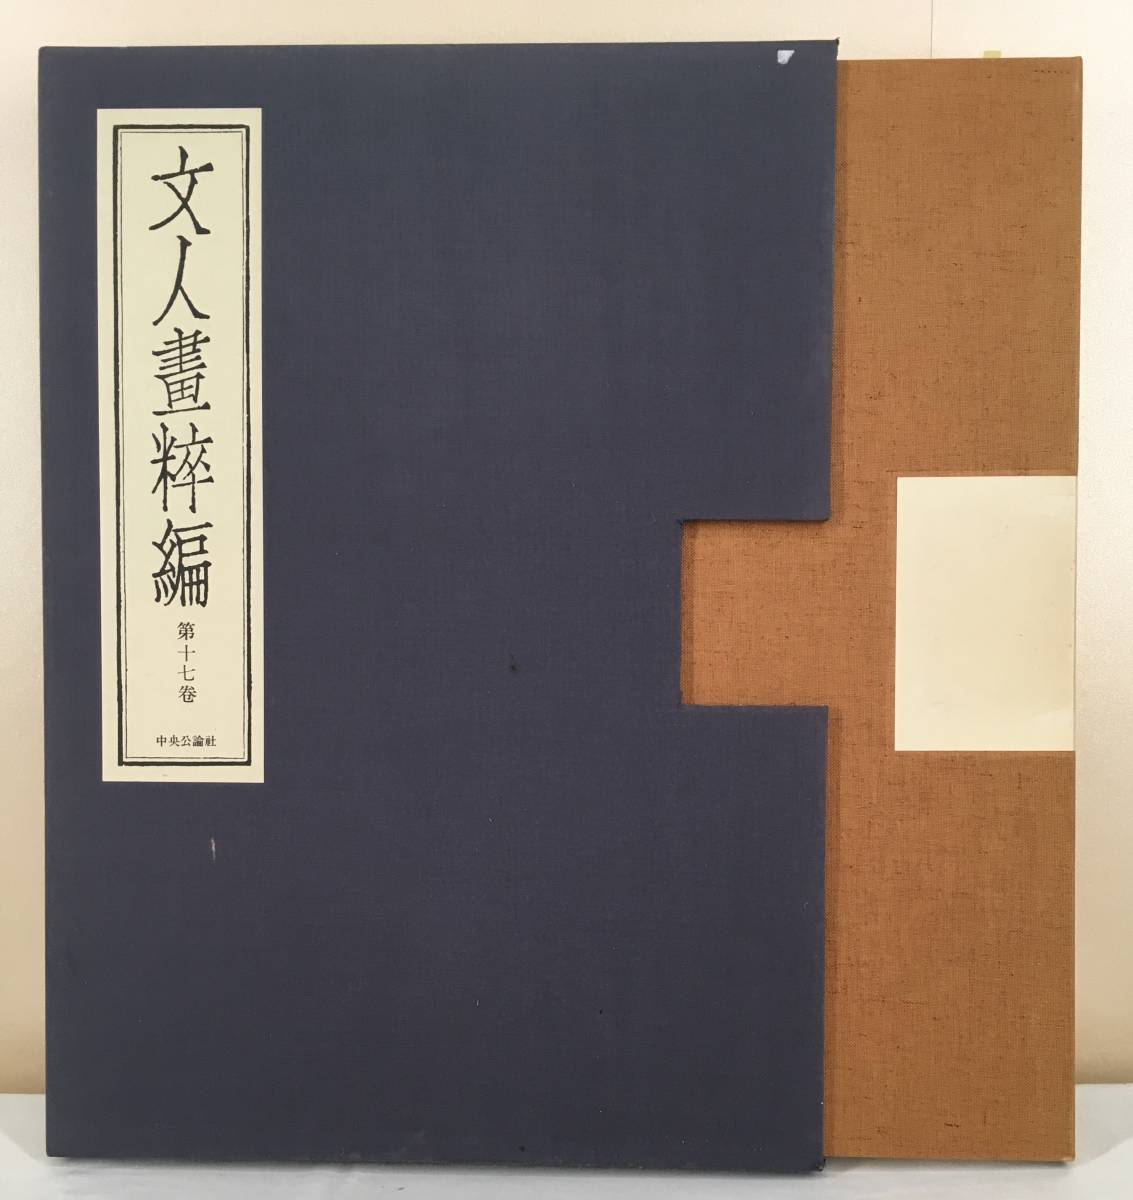 واضح! / [تاكادا تانومورا, اللوحات الأدبية, Chuokoron-Shinsha] / يقتصر على 980 نسخة / Bungo Nanga / Taketa City, محافظة أويتا, عمل فني, تلوين, الرسم بالحبر